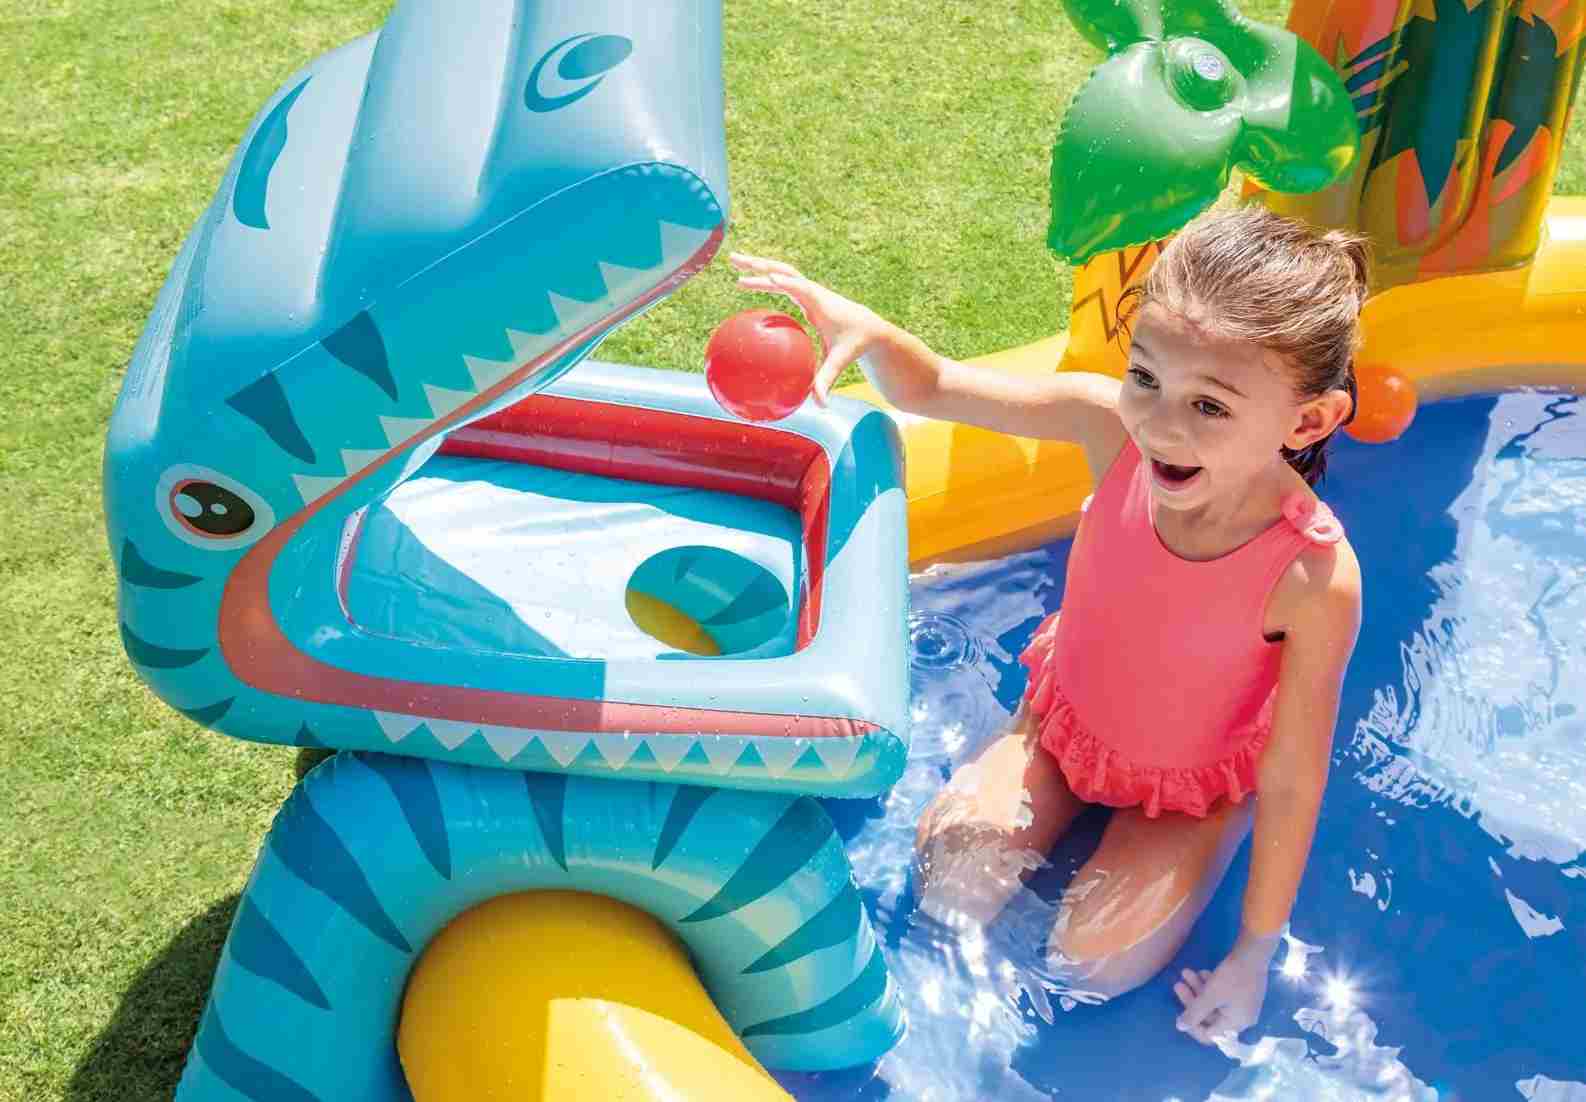 Duży dmuchany basen wodny plac zabaw dla dzieci do wody 259 cm x 191 cm